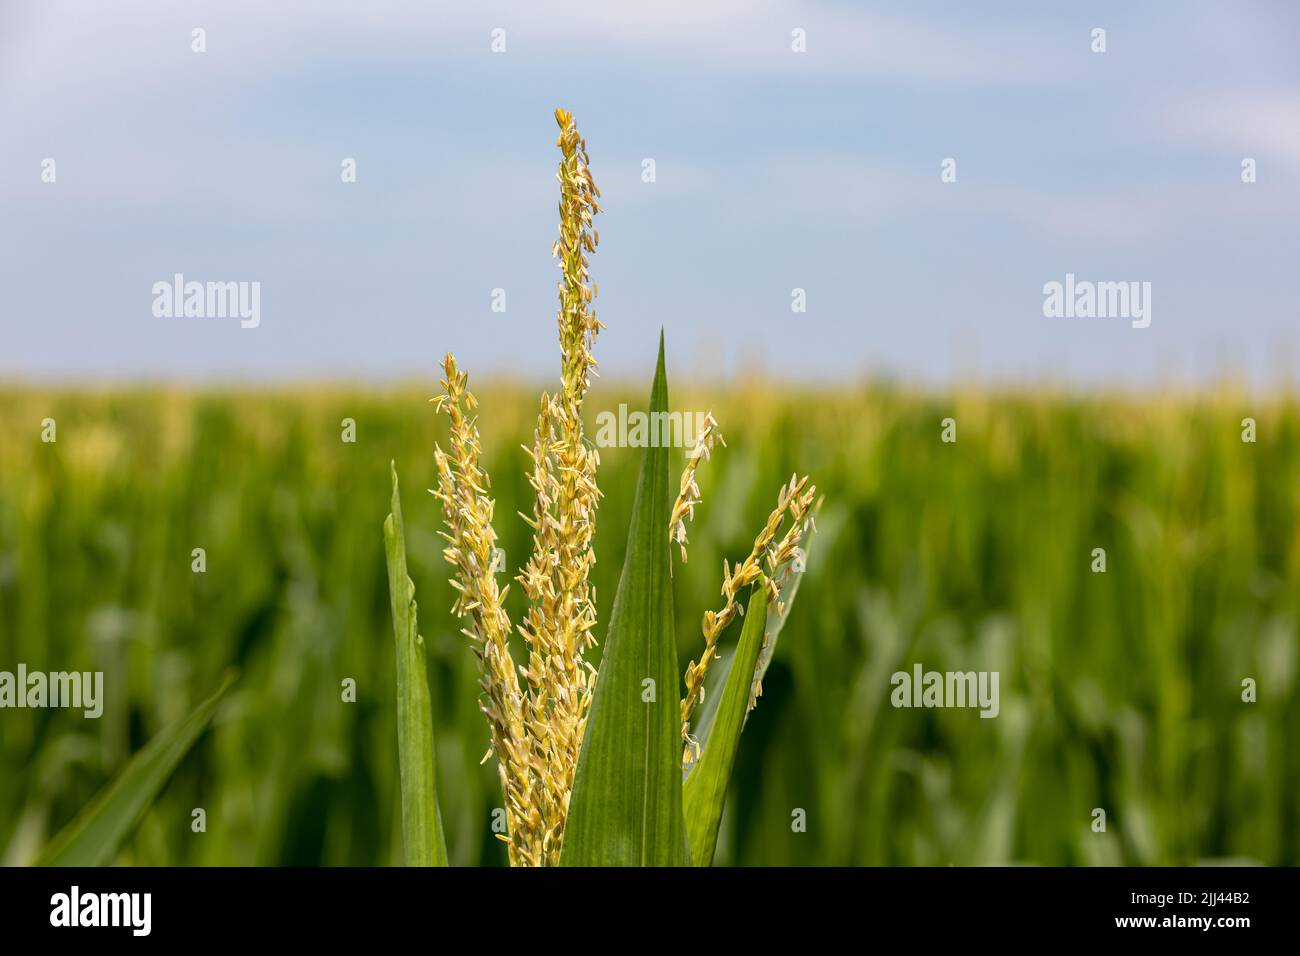 La borla de maíz en el tallo de maíz durante la temporada de crecimiento del verano. Cultivando, agricultura, y el concepto del etanol. Foto de stock